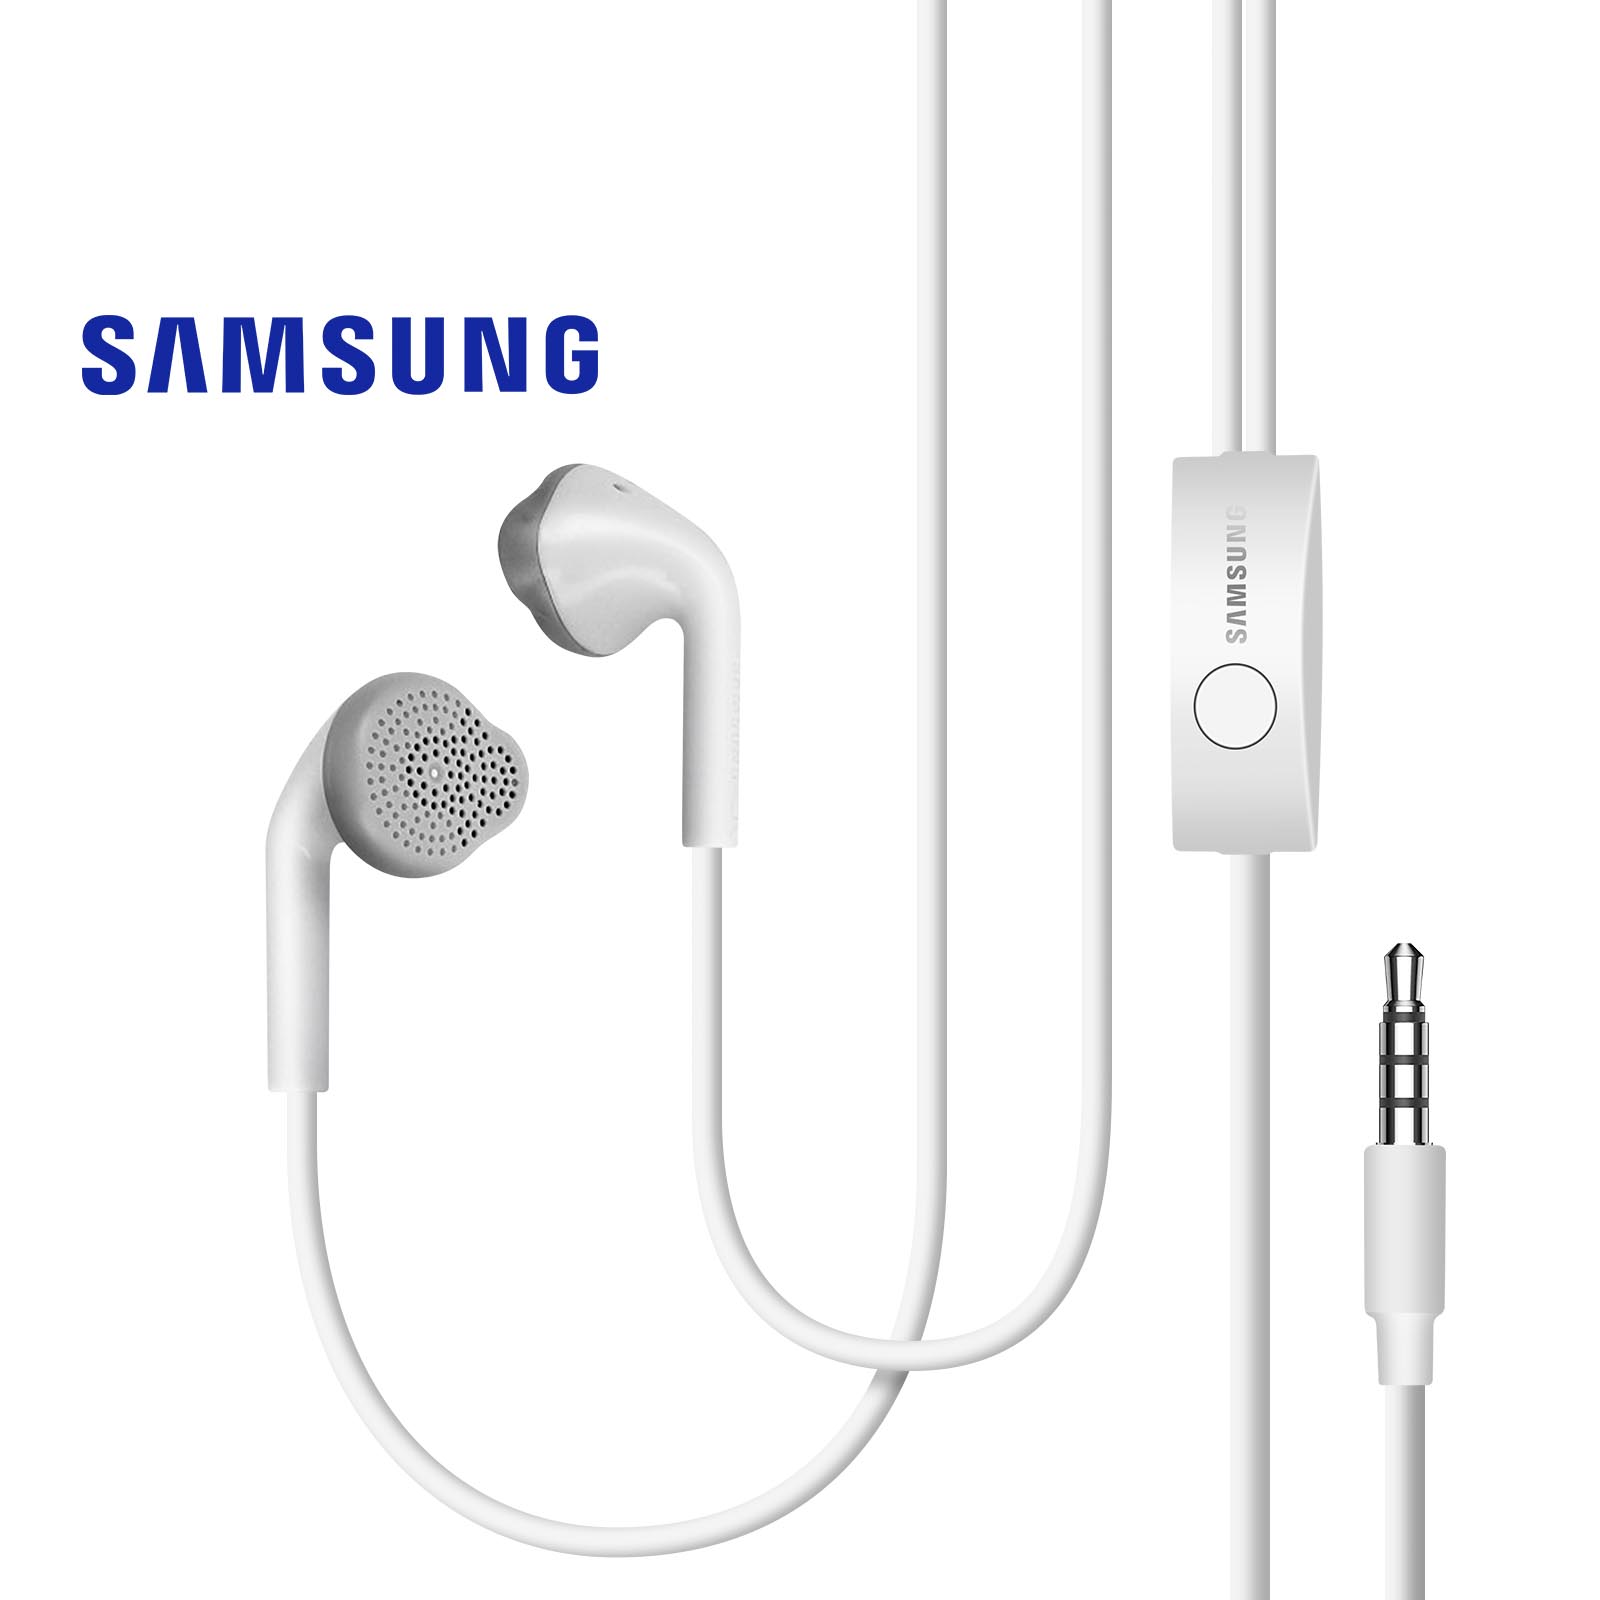 Bon plan : ces écouteurs Samsung TWS à 132 euros ne pénètrent pas  profondément dans vos oreilles